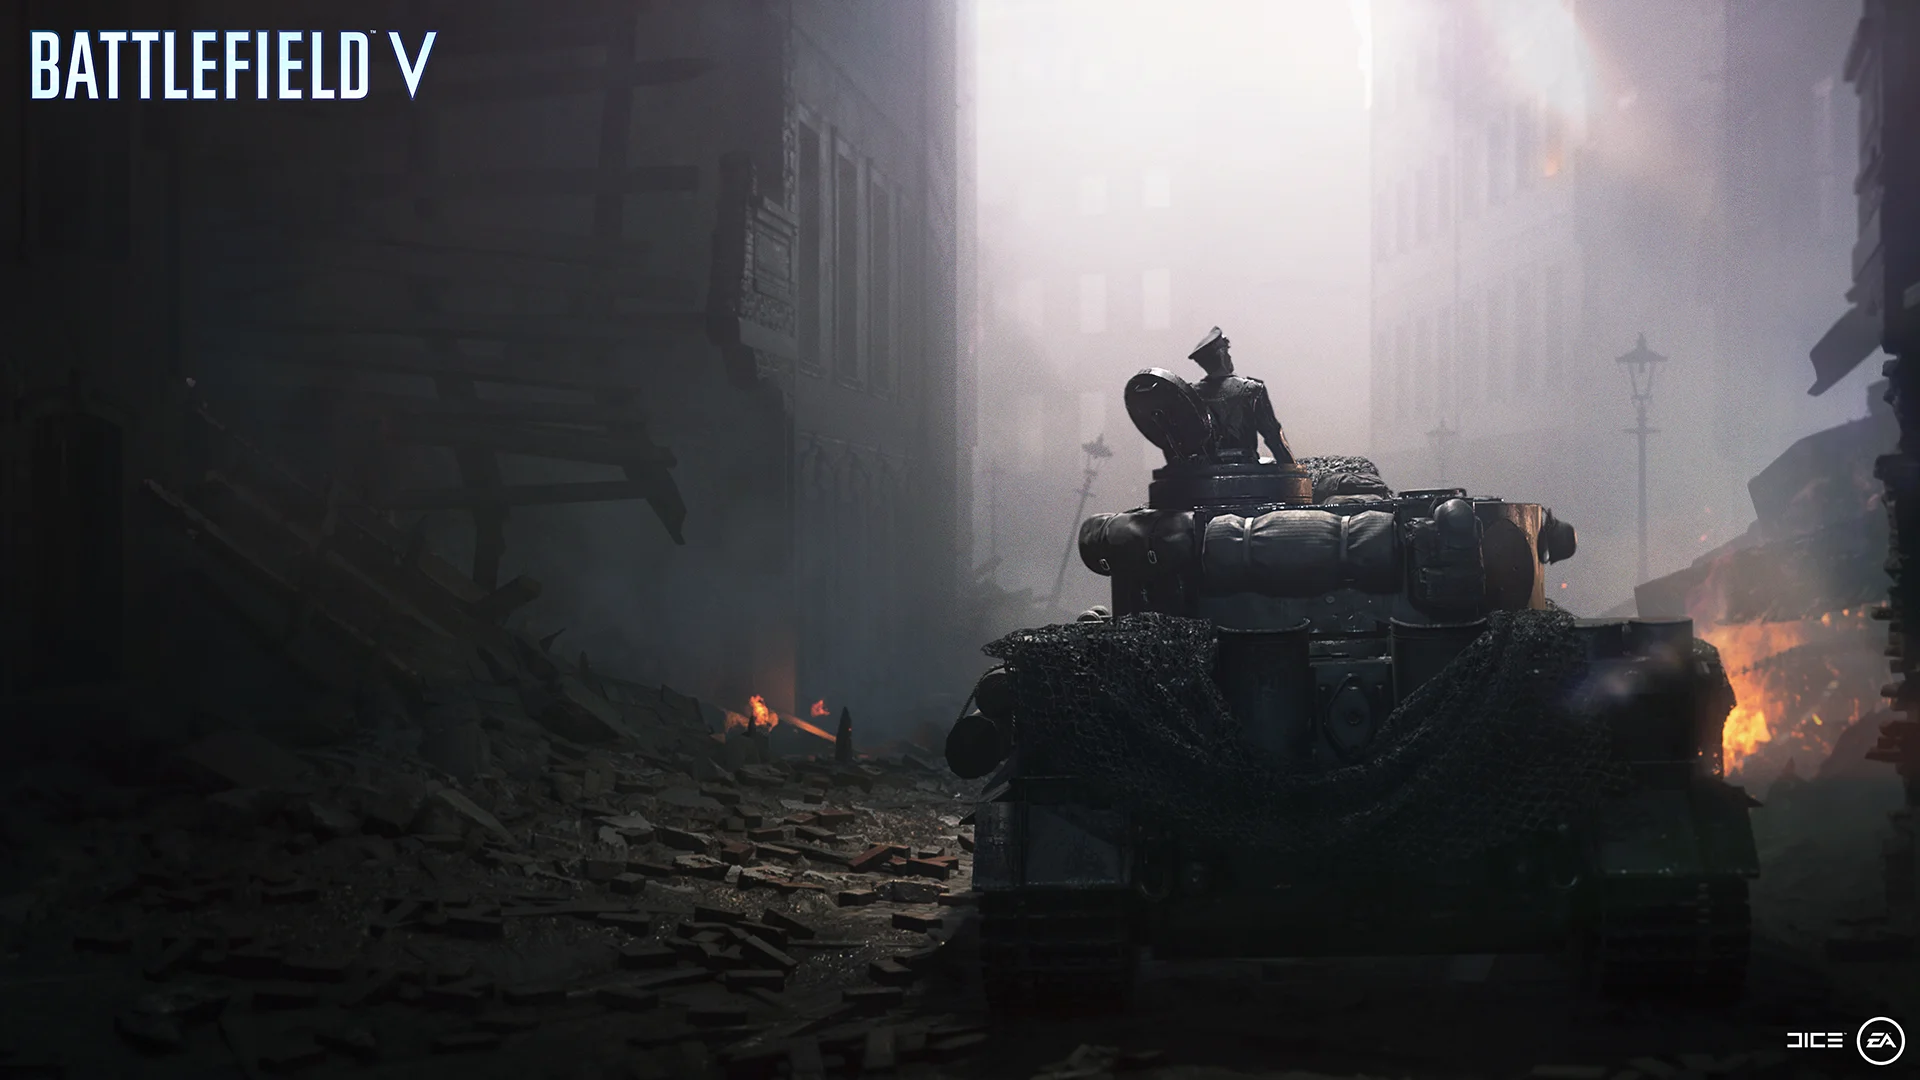 4 важных факта о кампании Battlefield V, которые вам стоит узнать до покупки - фото 2